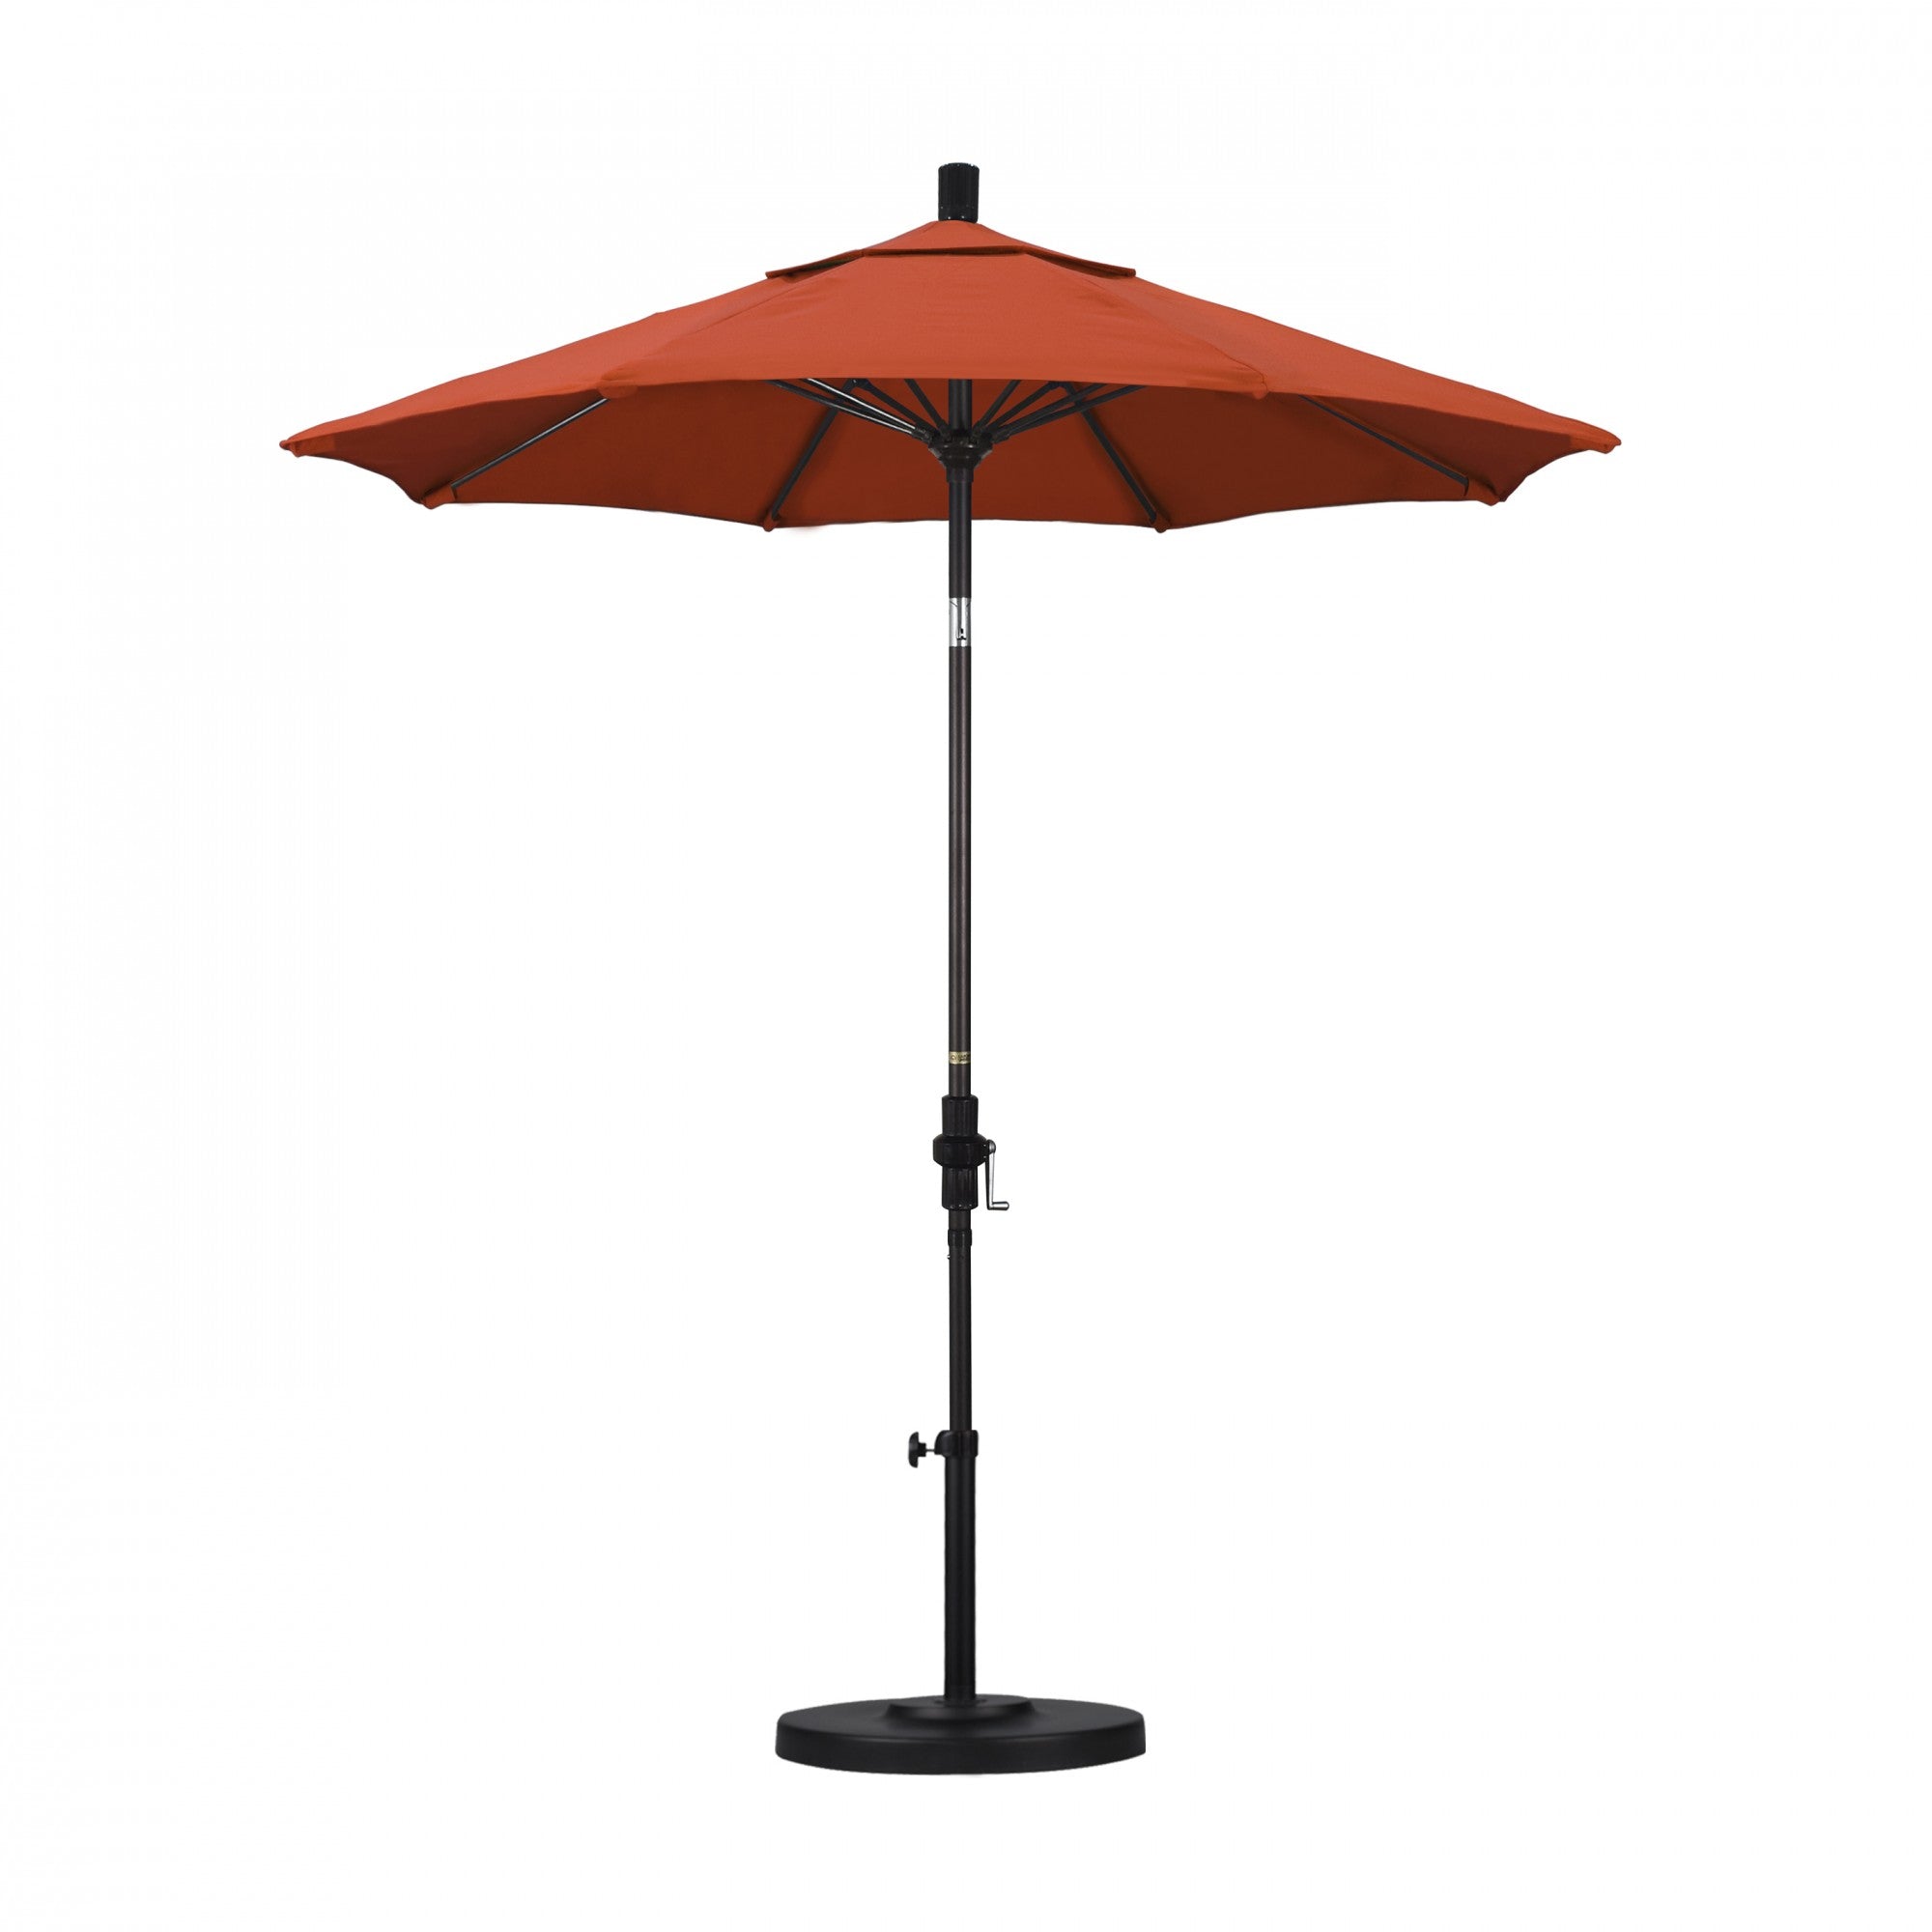 California Umbrella - 7.5' - Patio Umbrella Umbrella - Aluminum Pole - Sunset - Olefin - GSCUF758117-F27